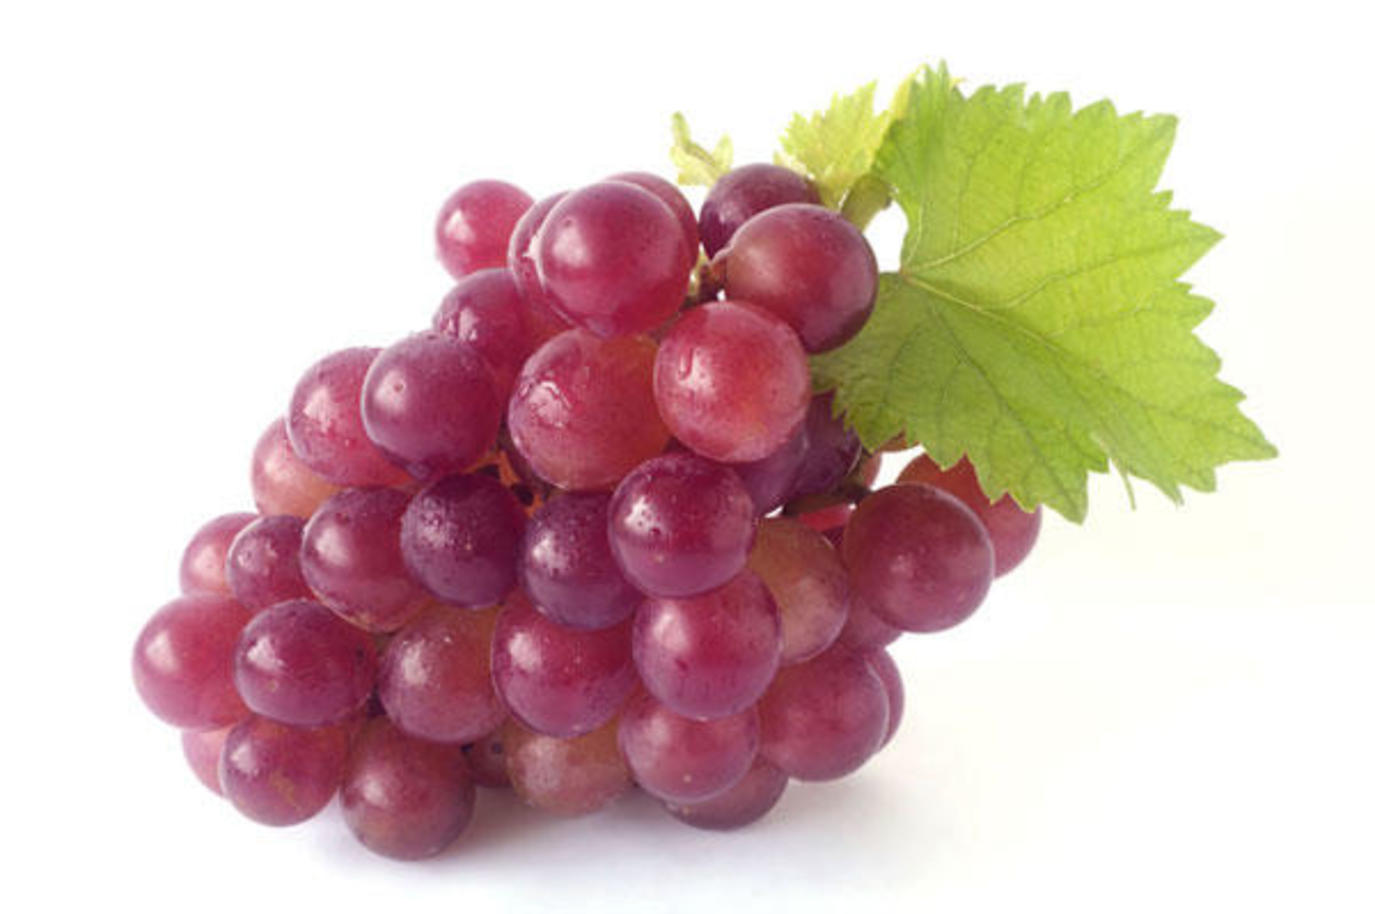 فوائد العنب الأحمر للنساء خارقة! | مجلة سيدتي